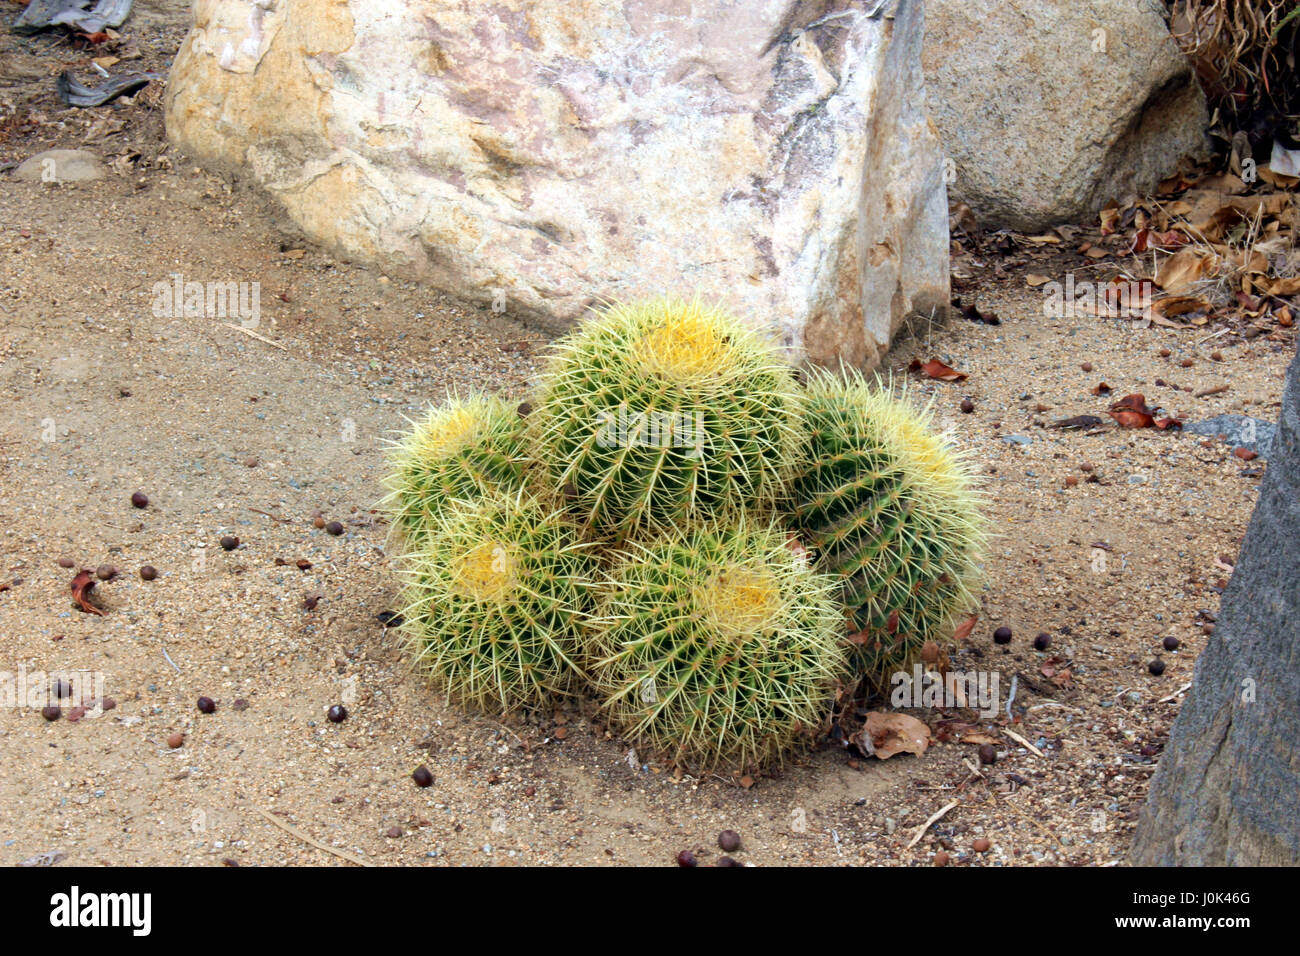 A clump of Golden Barrel cacti in the Desert Garden at Balboa Park in San Diego, California, USA Stock Photo